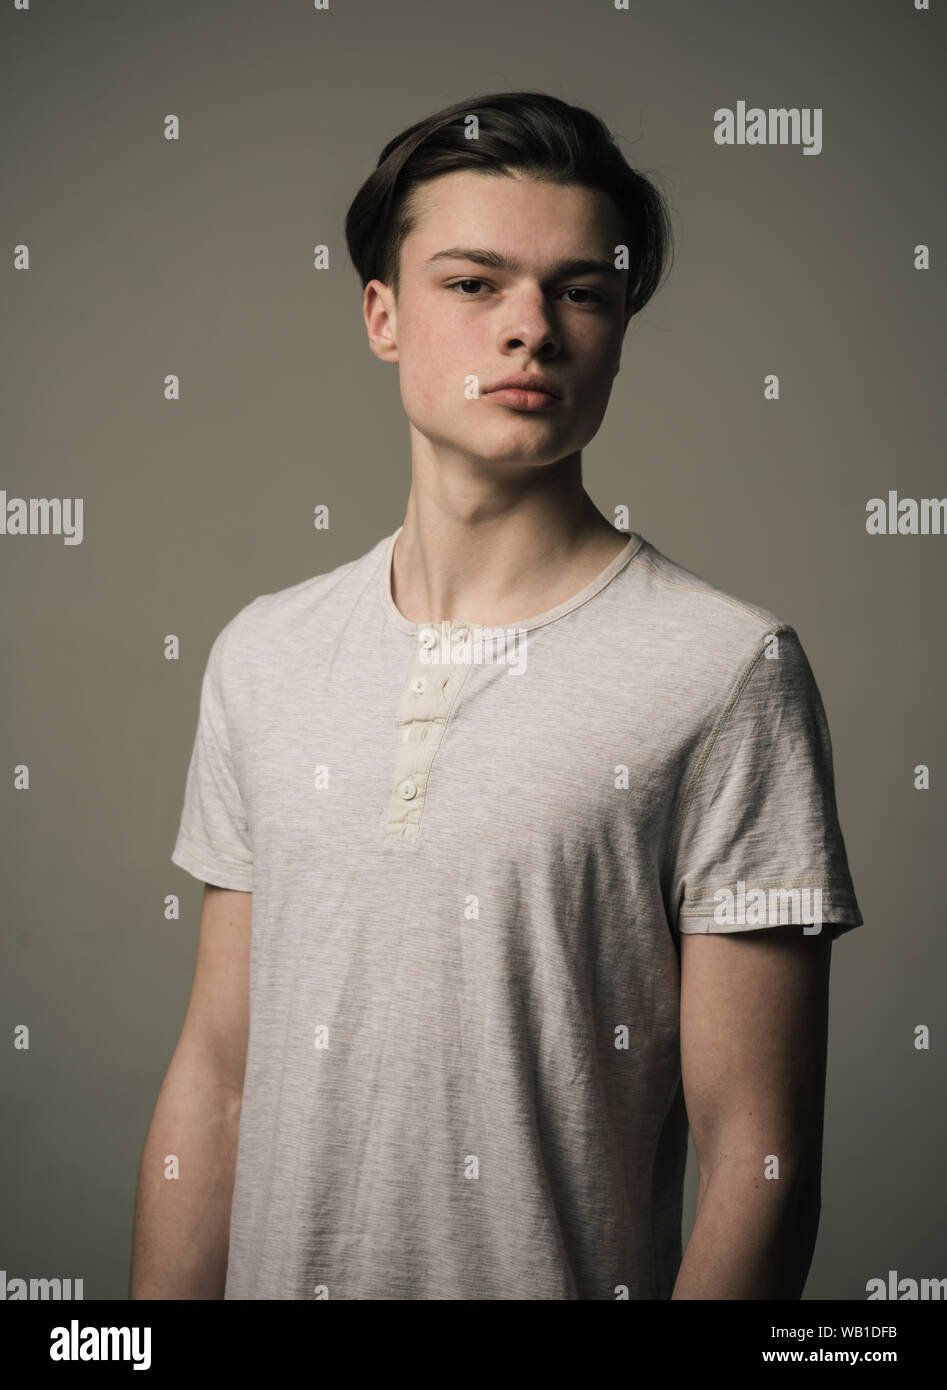 Ragazzo adolescente in T-shirt bianco isolato su sfondo grigio. Ritratto di fiducioso giovane con capelli lunghi, ardore della giovinezza. Foto Stock